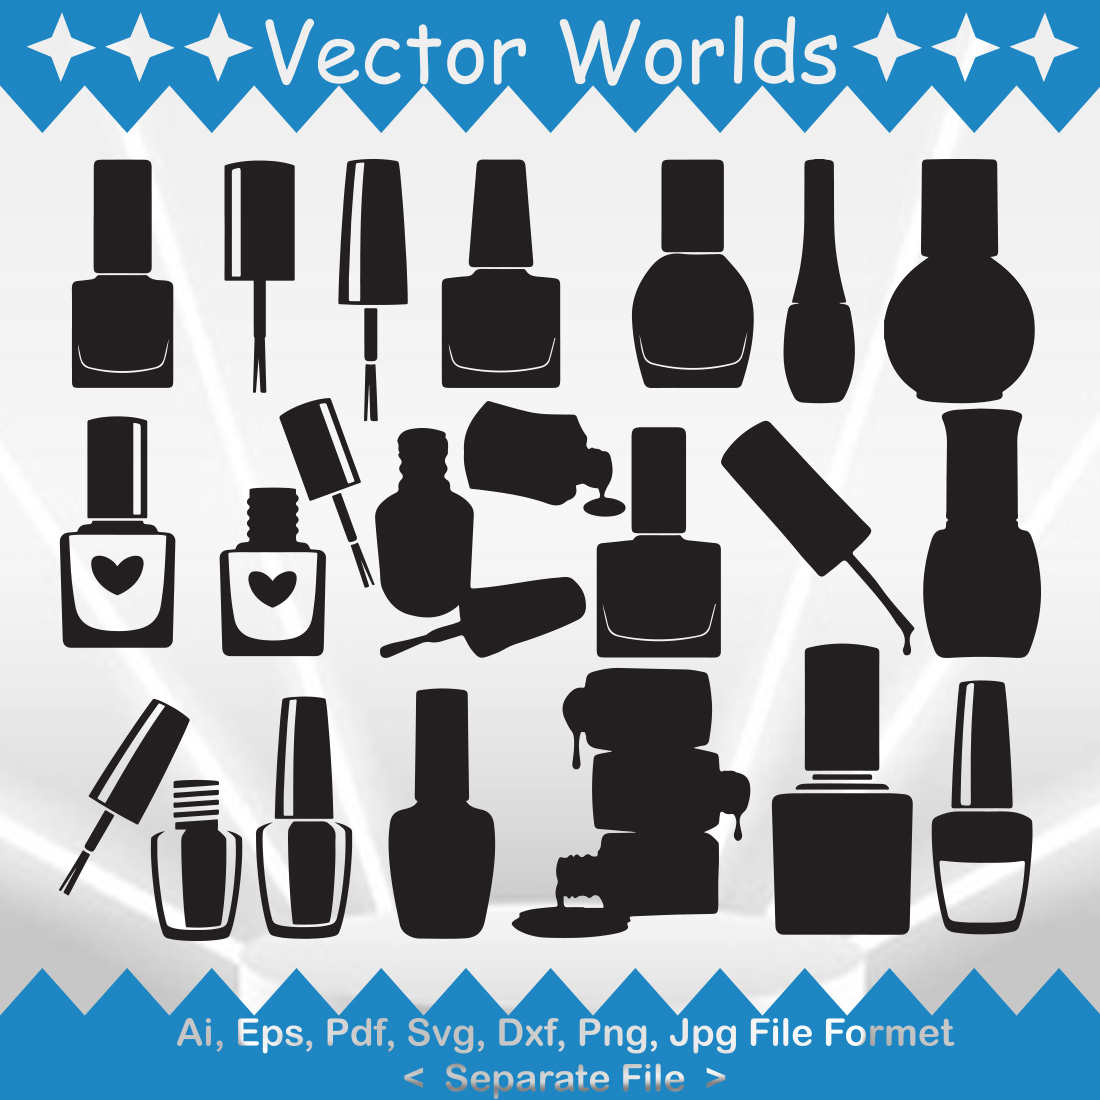 Nail Polish SVG Vector Design cover image.